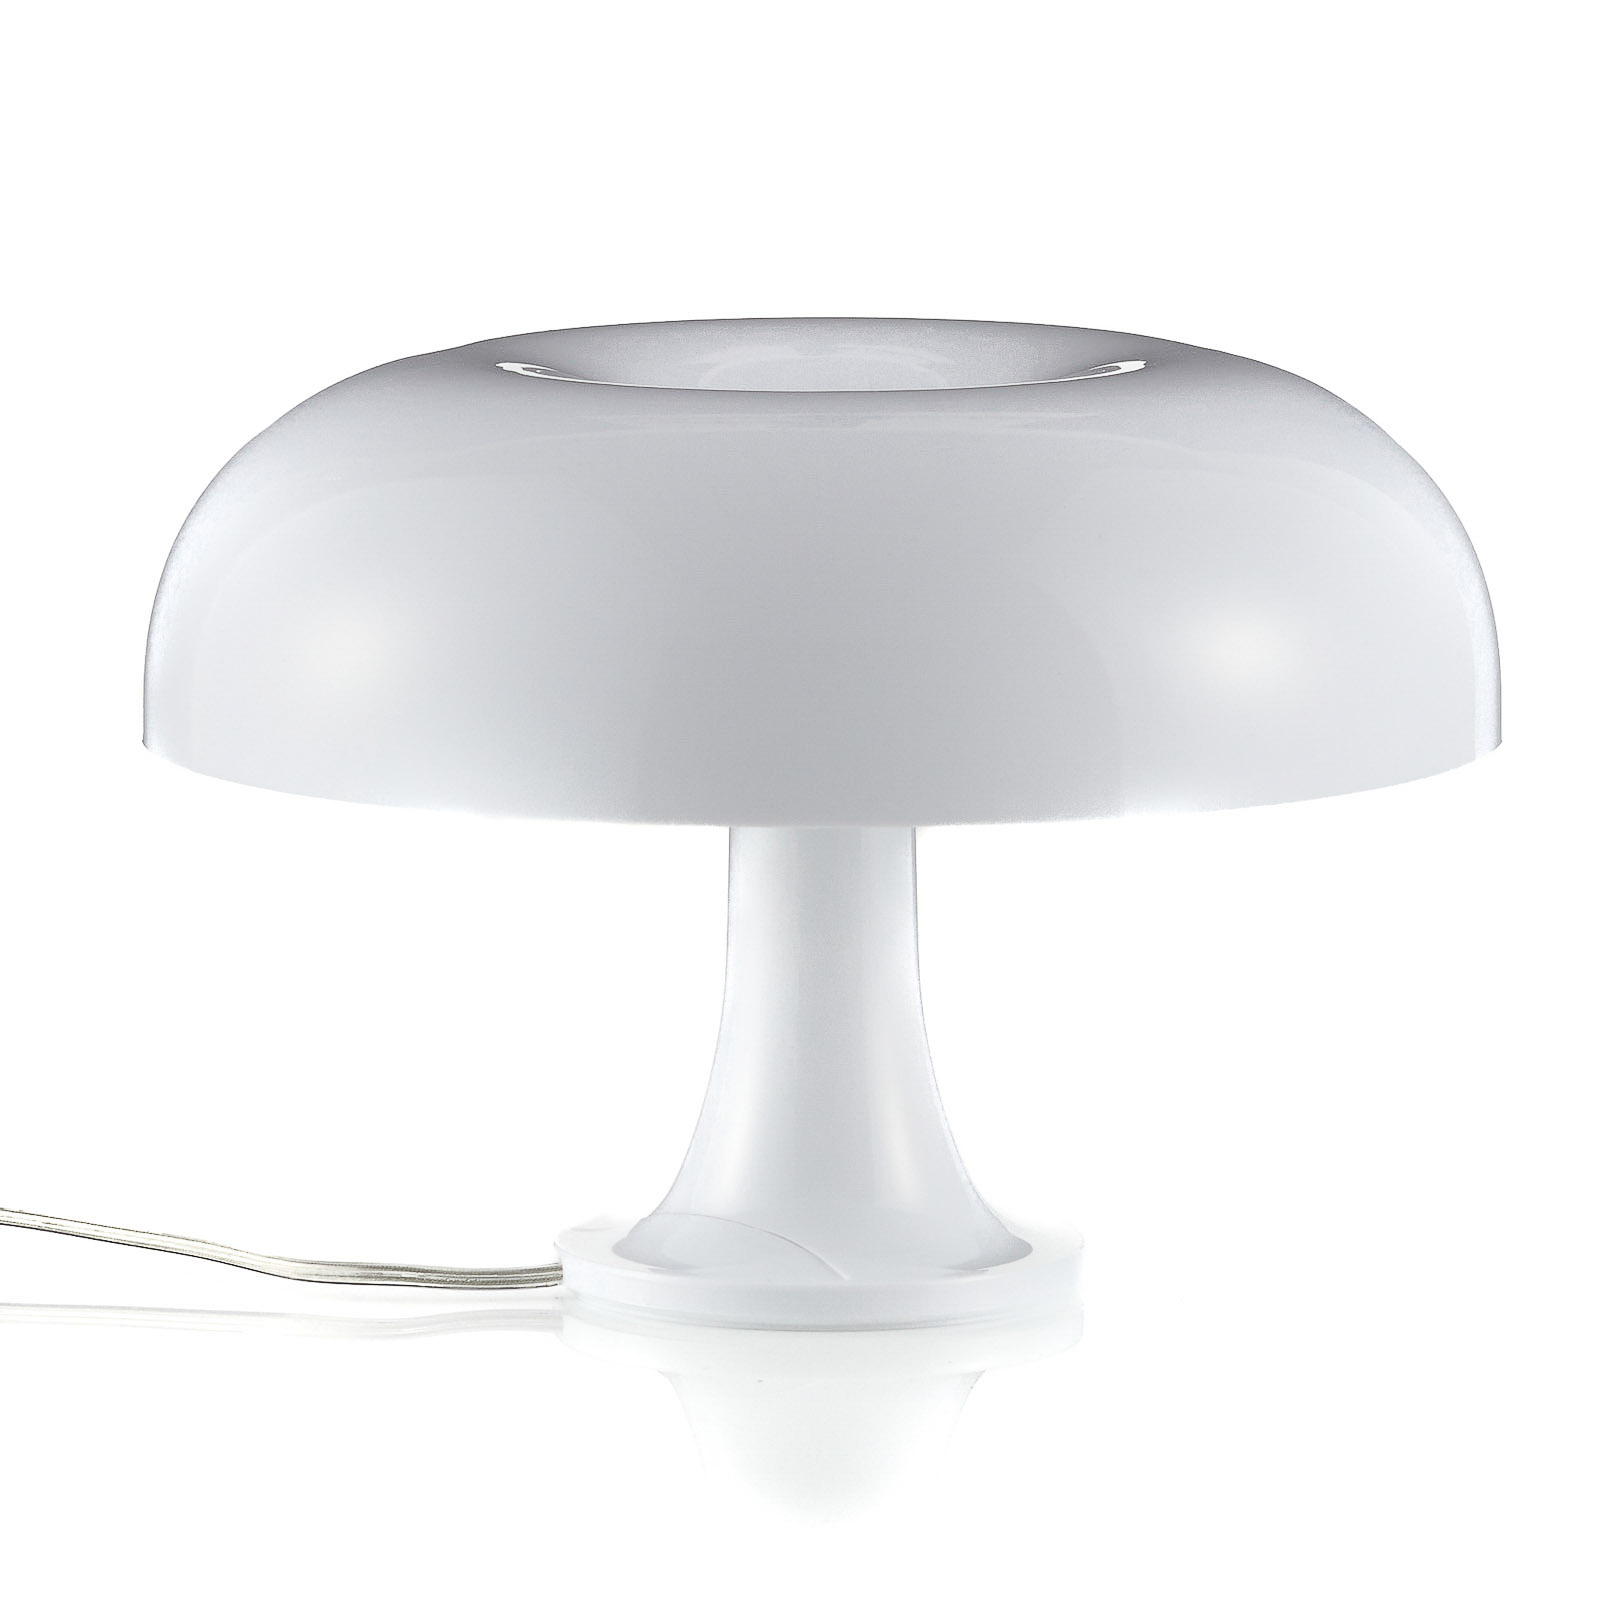 Artemide Nessino - lampe à poser design, blanche